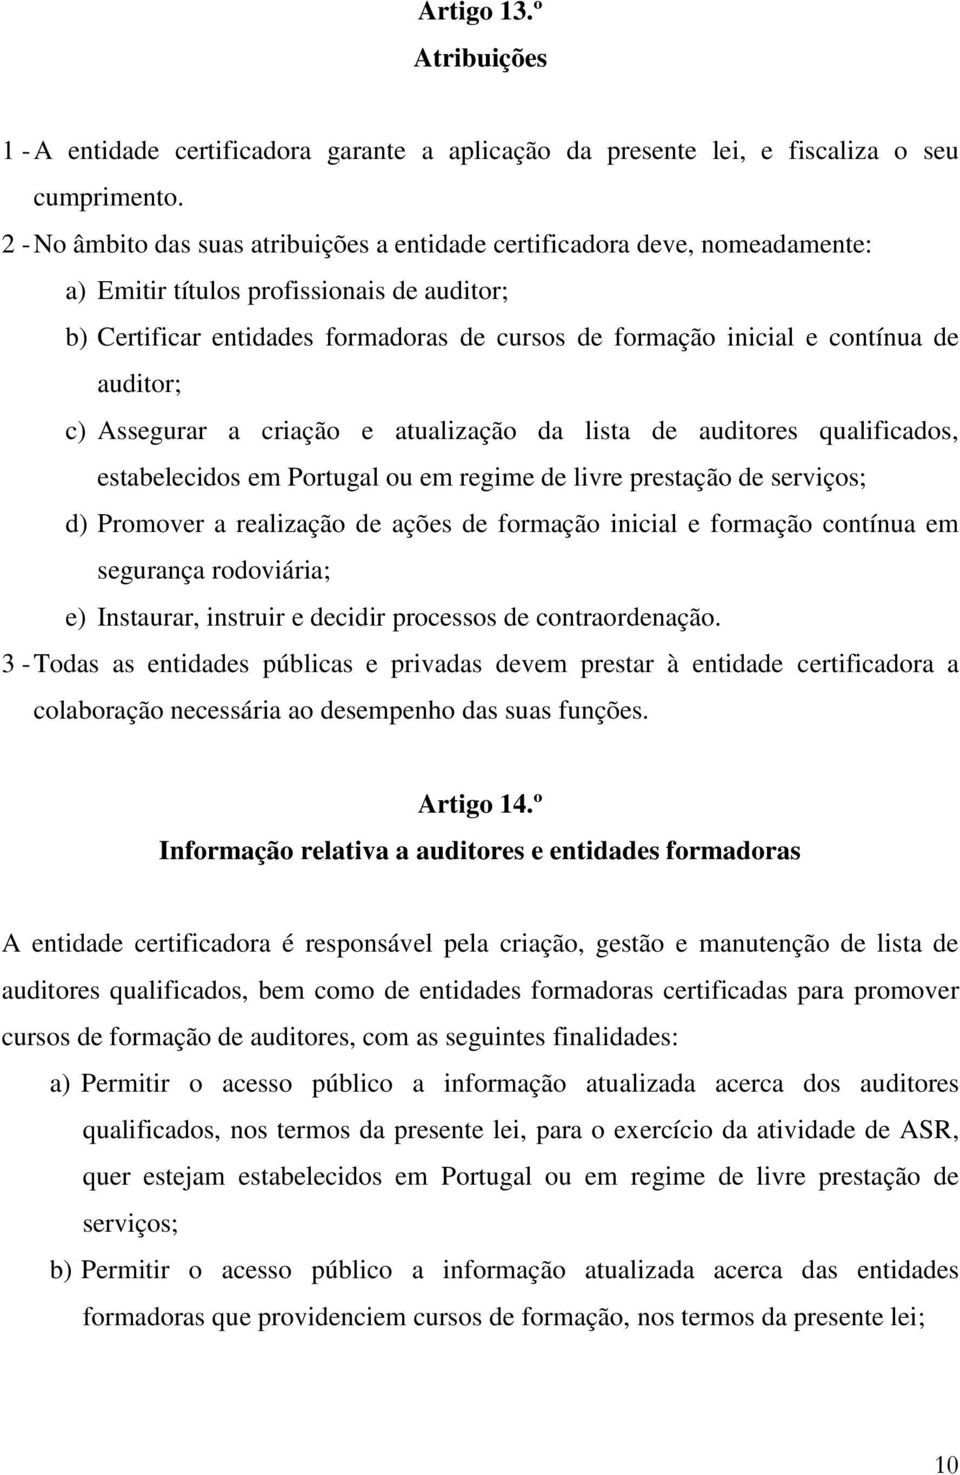 de auditor; c) Assegurar a criação e atualização da lista de auditores qualificados, estabelecidos em Portugal ou em regime de livre prestação de serviços; d) Promover a realização de ações de